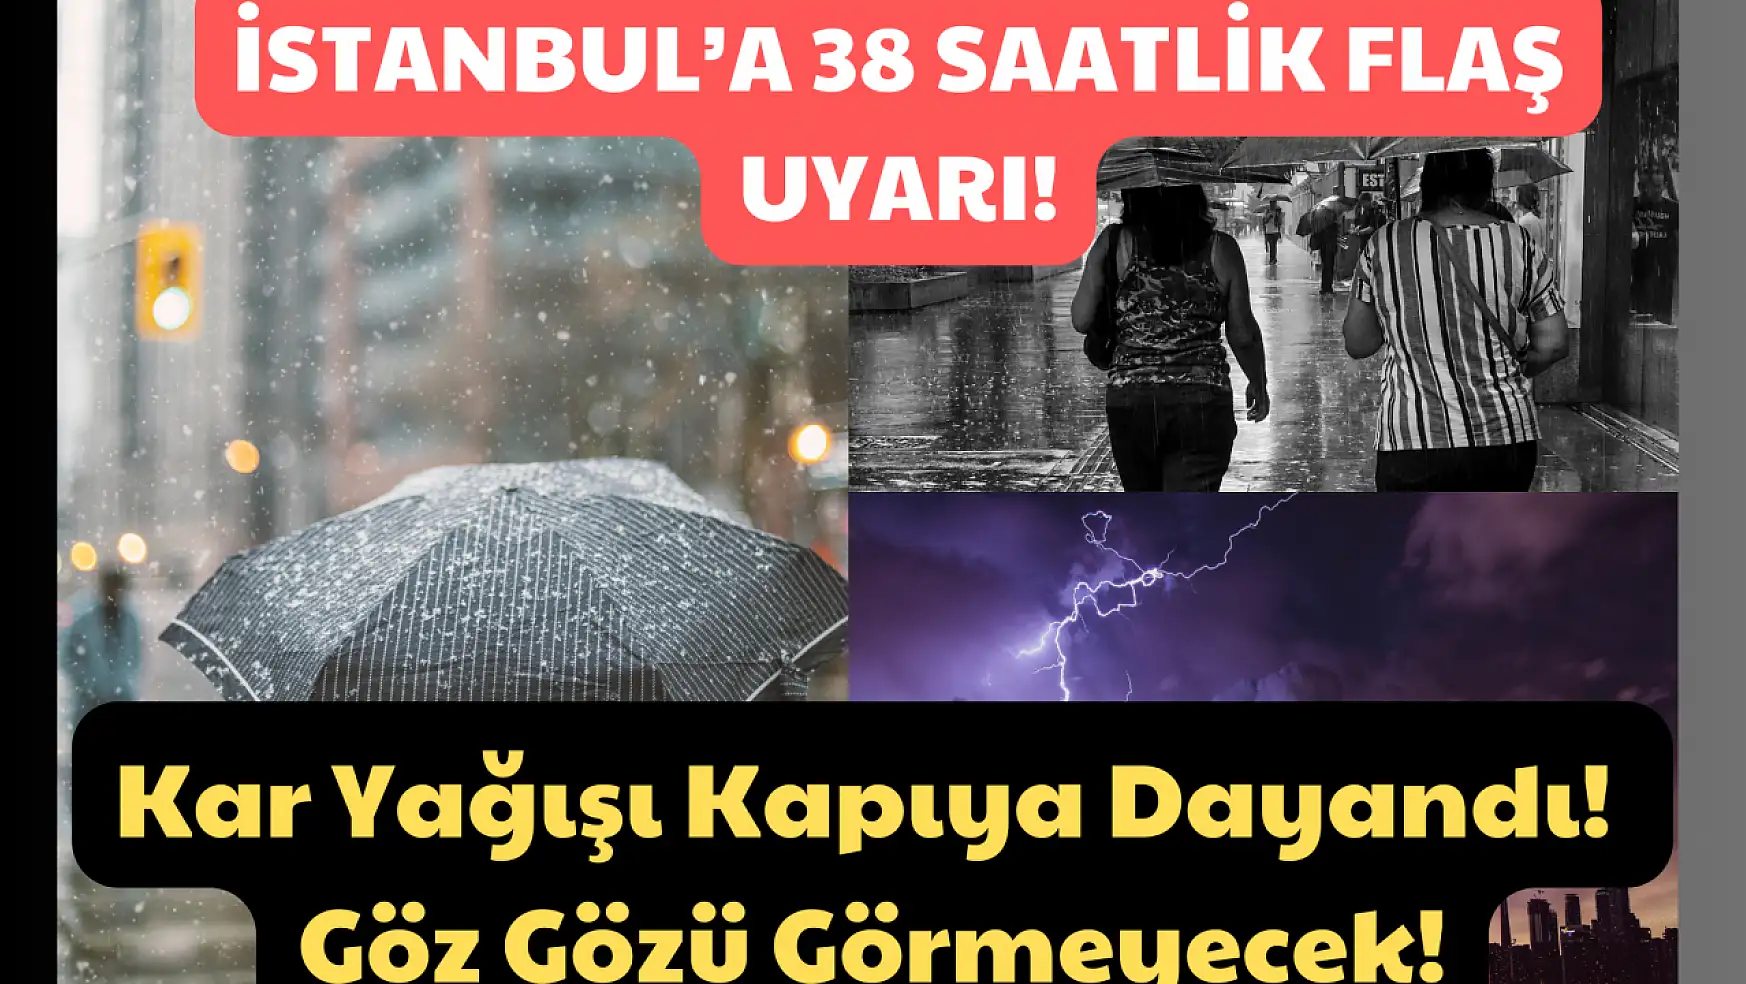 İstanbul'a 38 Saatlik Flaş Uyarı! Kar Kapıya Dayandı! Göz Gözü Görmeyecek…